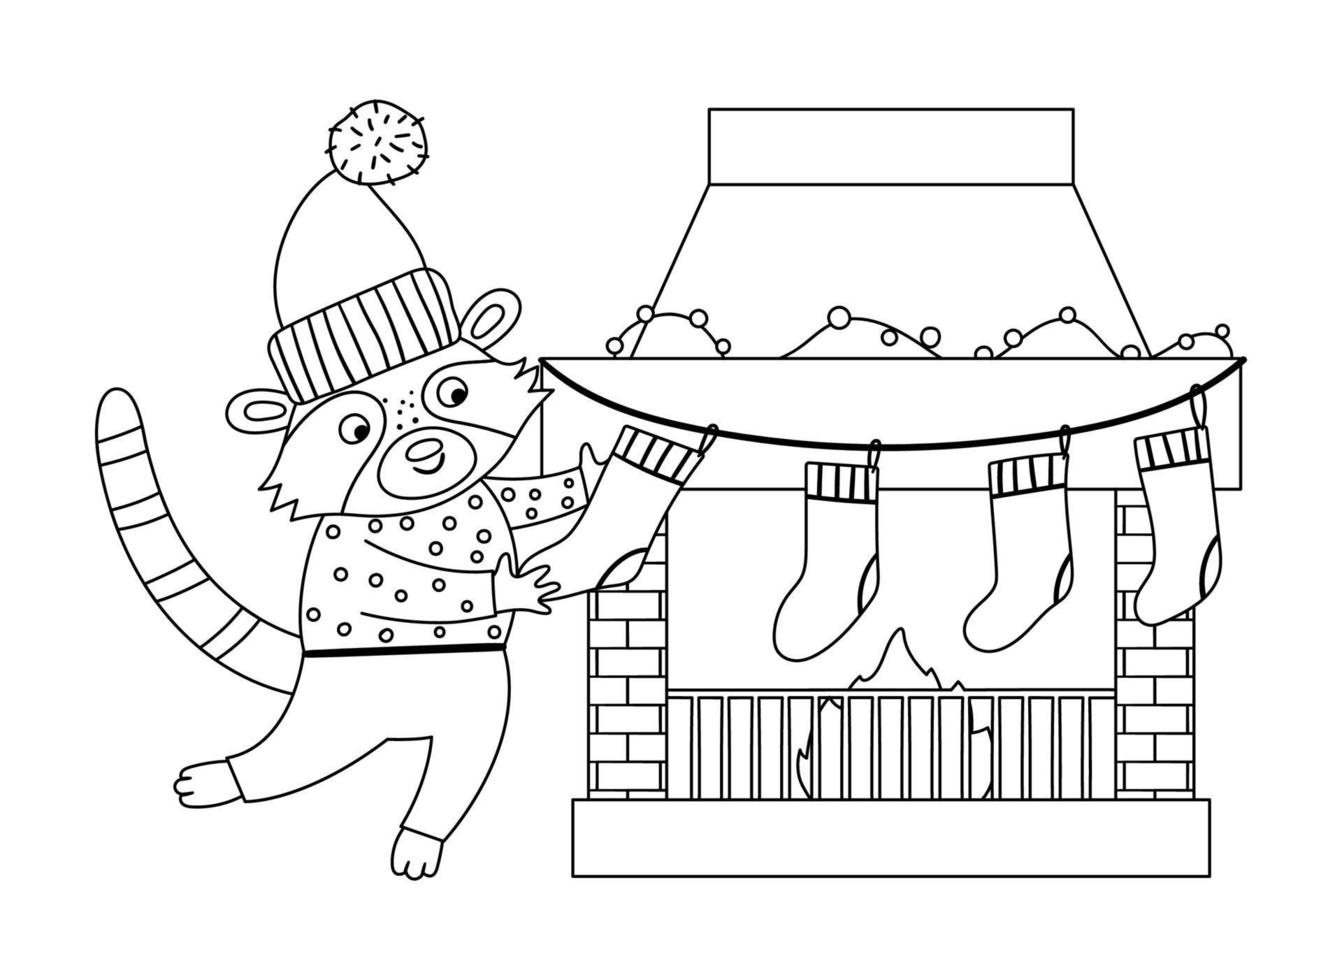 söt svartvitt julförberedelsesscen med tvättbjörn i hatt och tröja med strumpor och skorsten. vinterlinje illustration med djur och öppen spis. rolig kortdesign. nyårstryck vektor